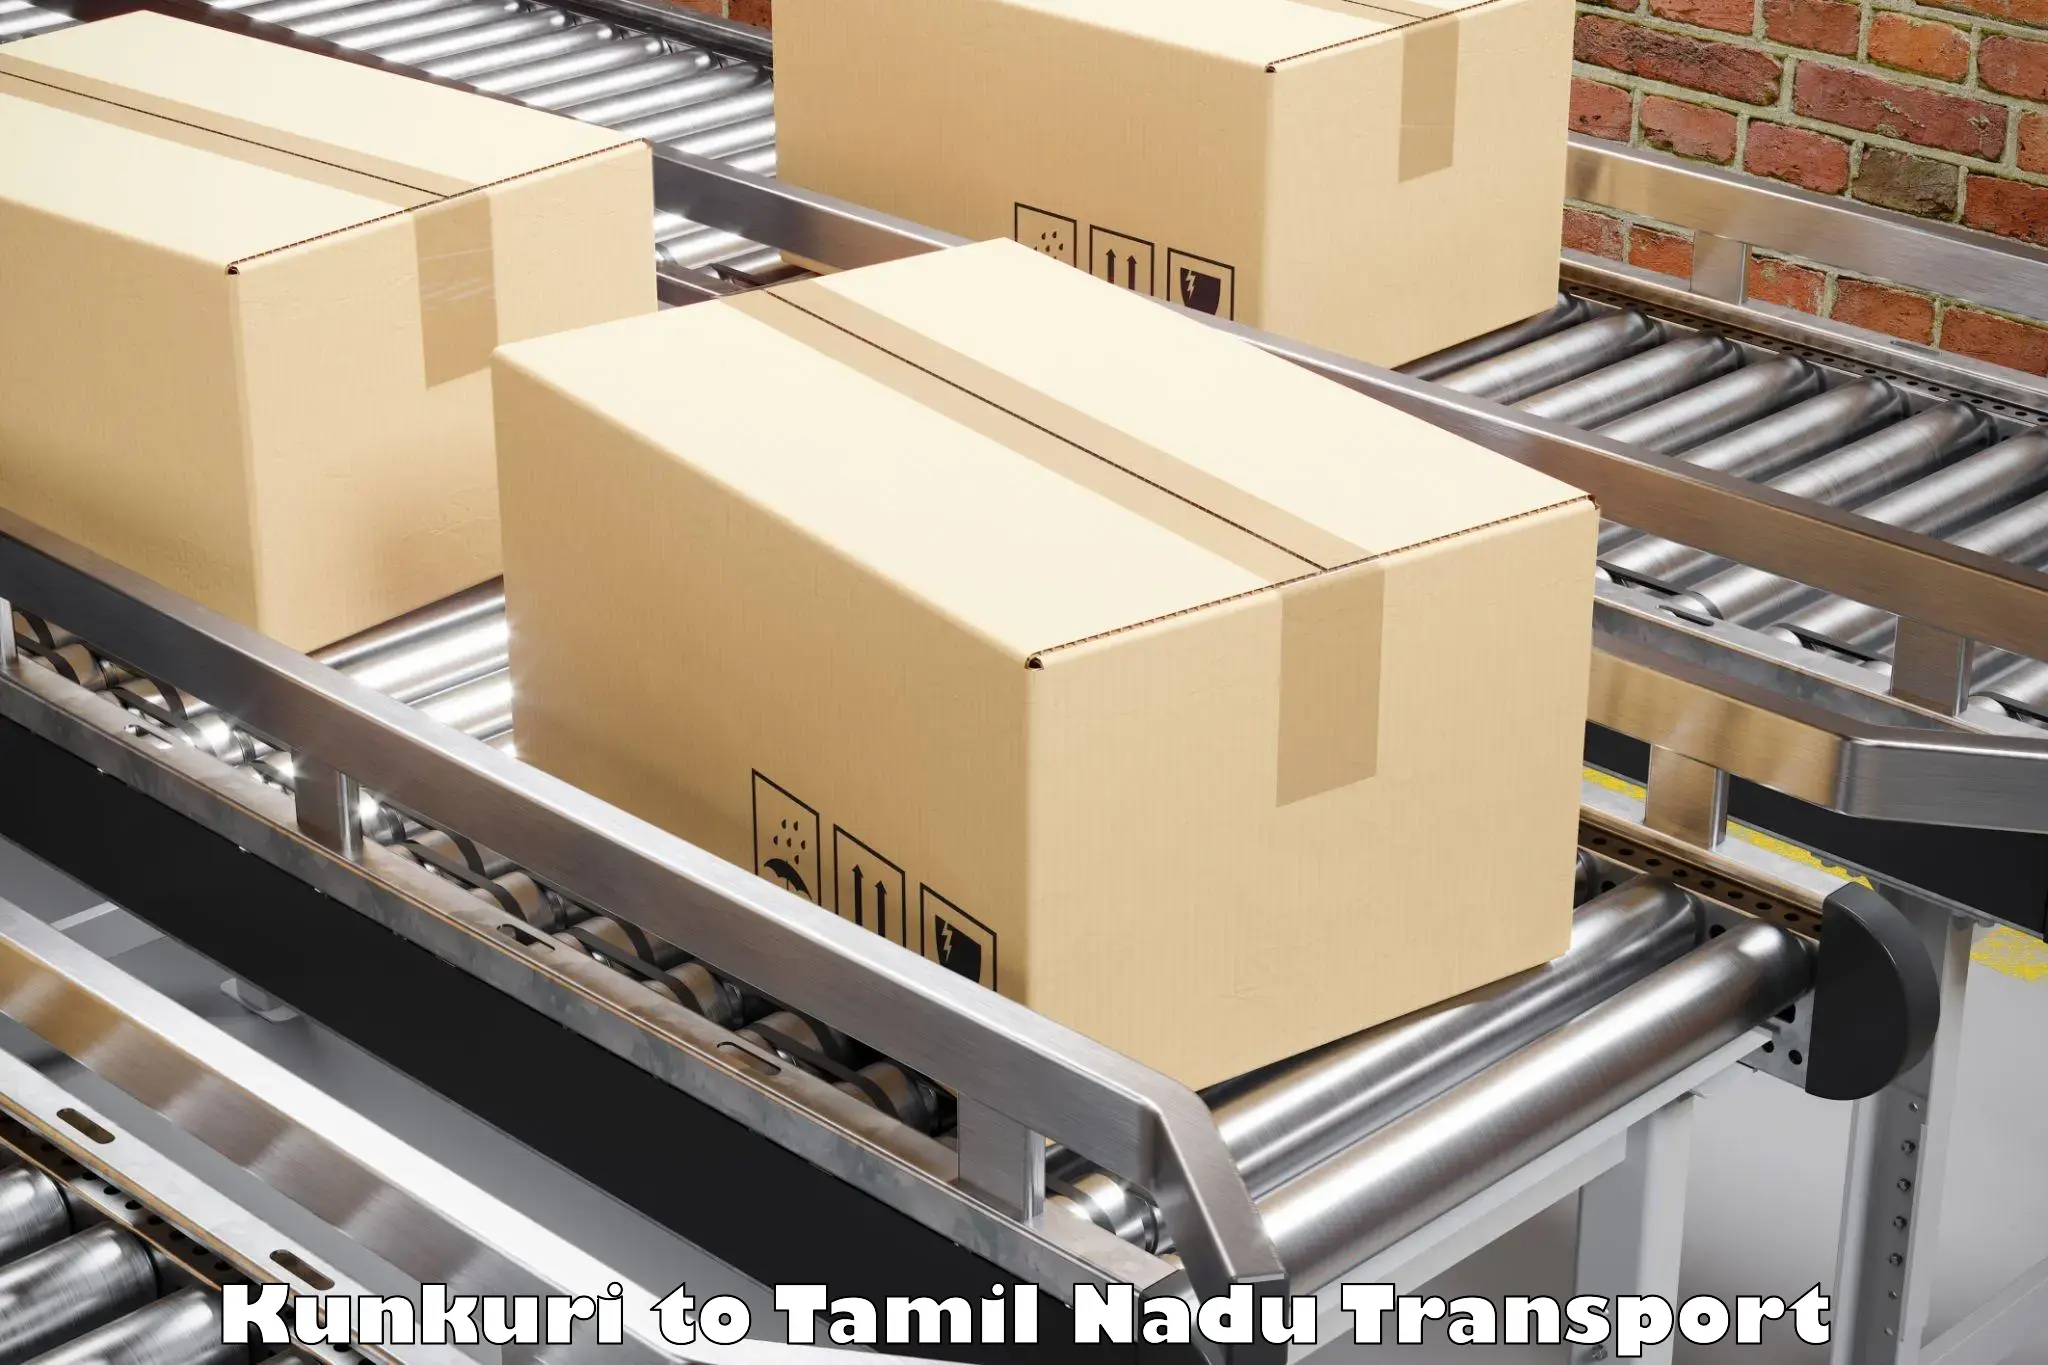 Transport services Kunkuri to Tamil Nadu